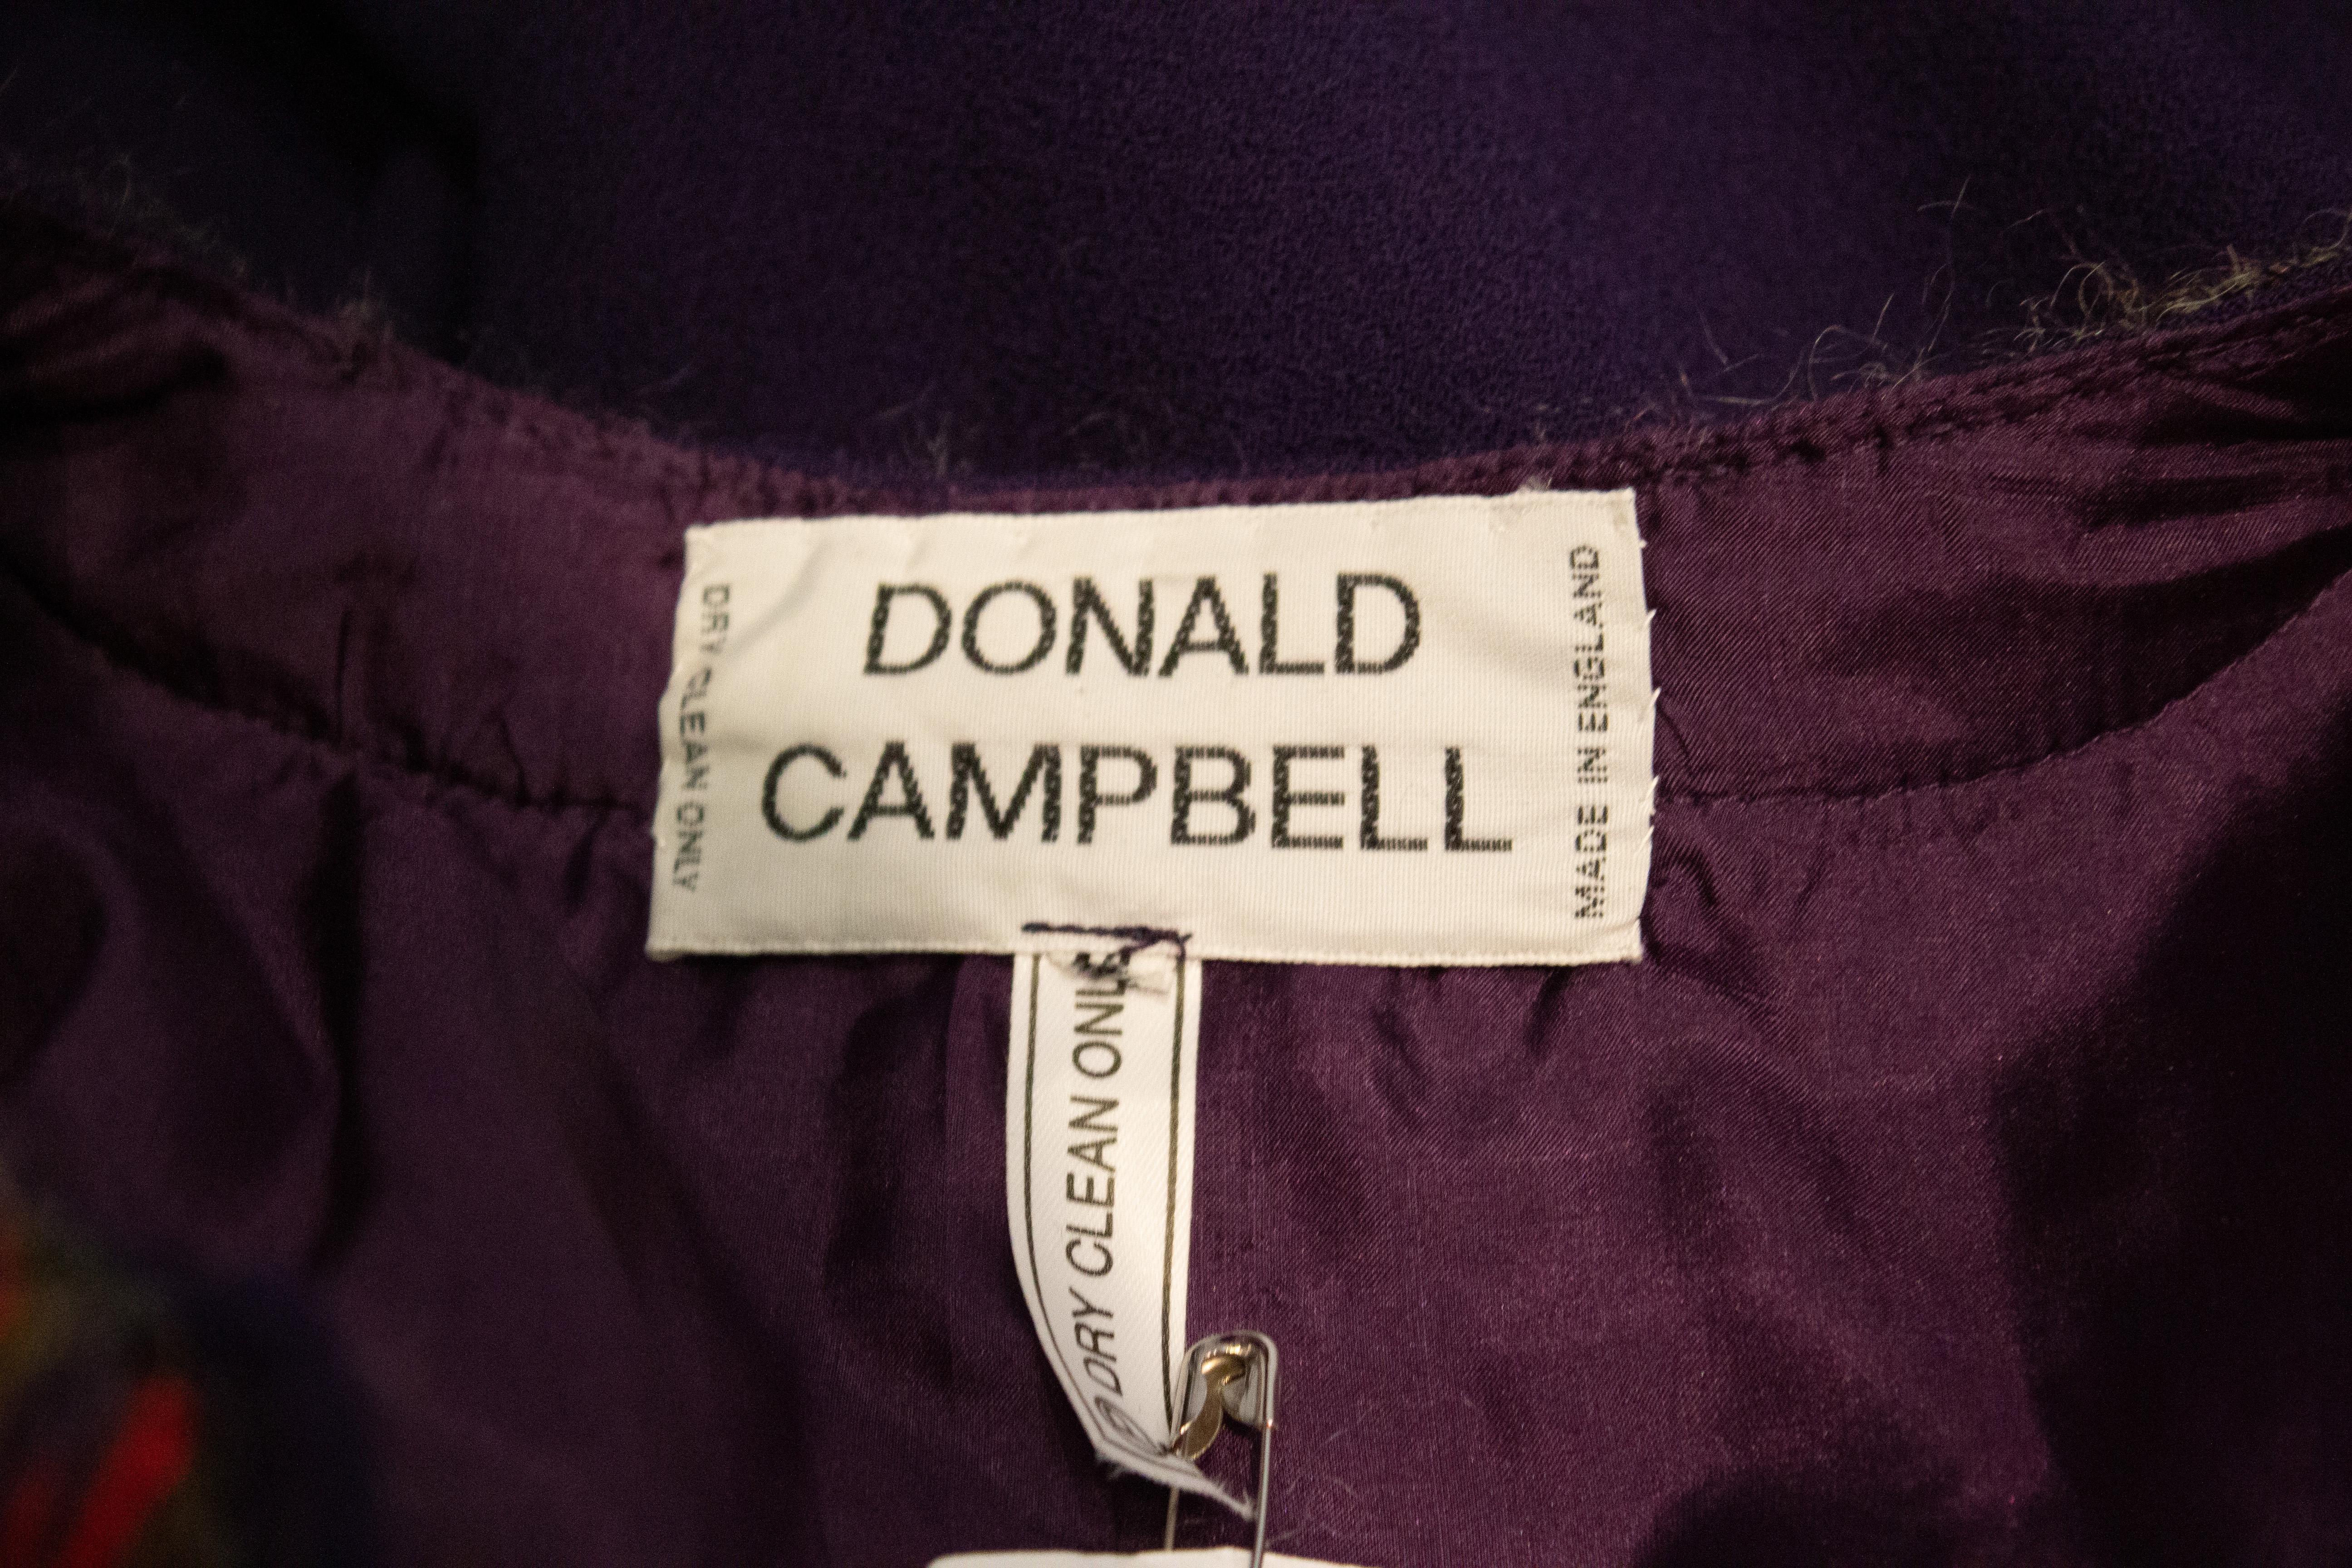 Une robe chic pour l'automne par Donald Campbell. La robe est en crêpe de laine violet (crêpe de Paris) avec une bordure rose, grise et violette. La partie supérieure est entièrement doublée.
Mesures : Poitrine jusqu'à 42'' Longueur 50''
